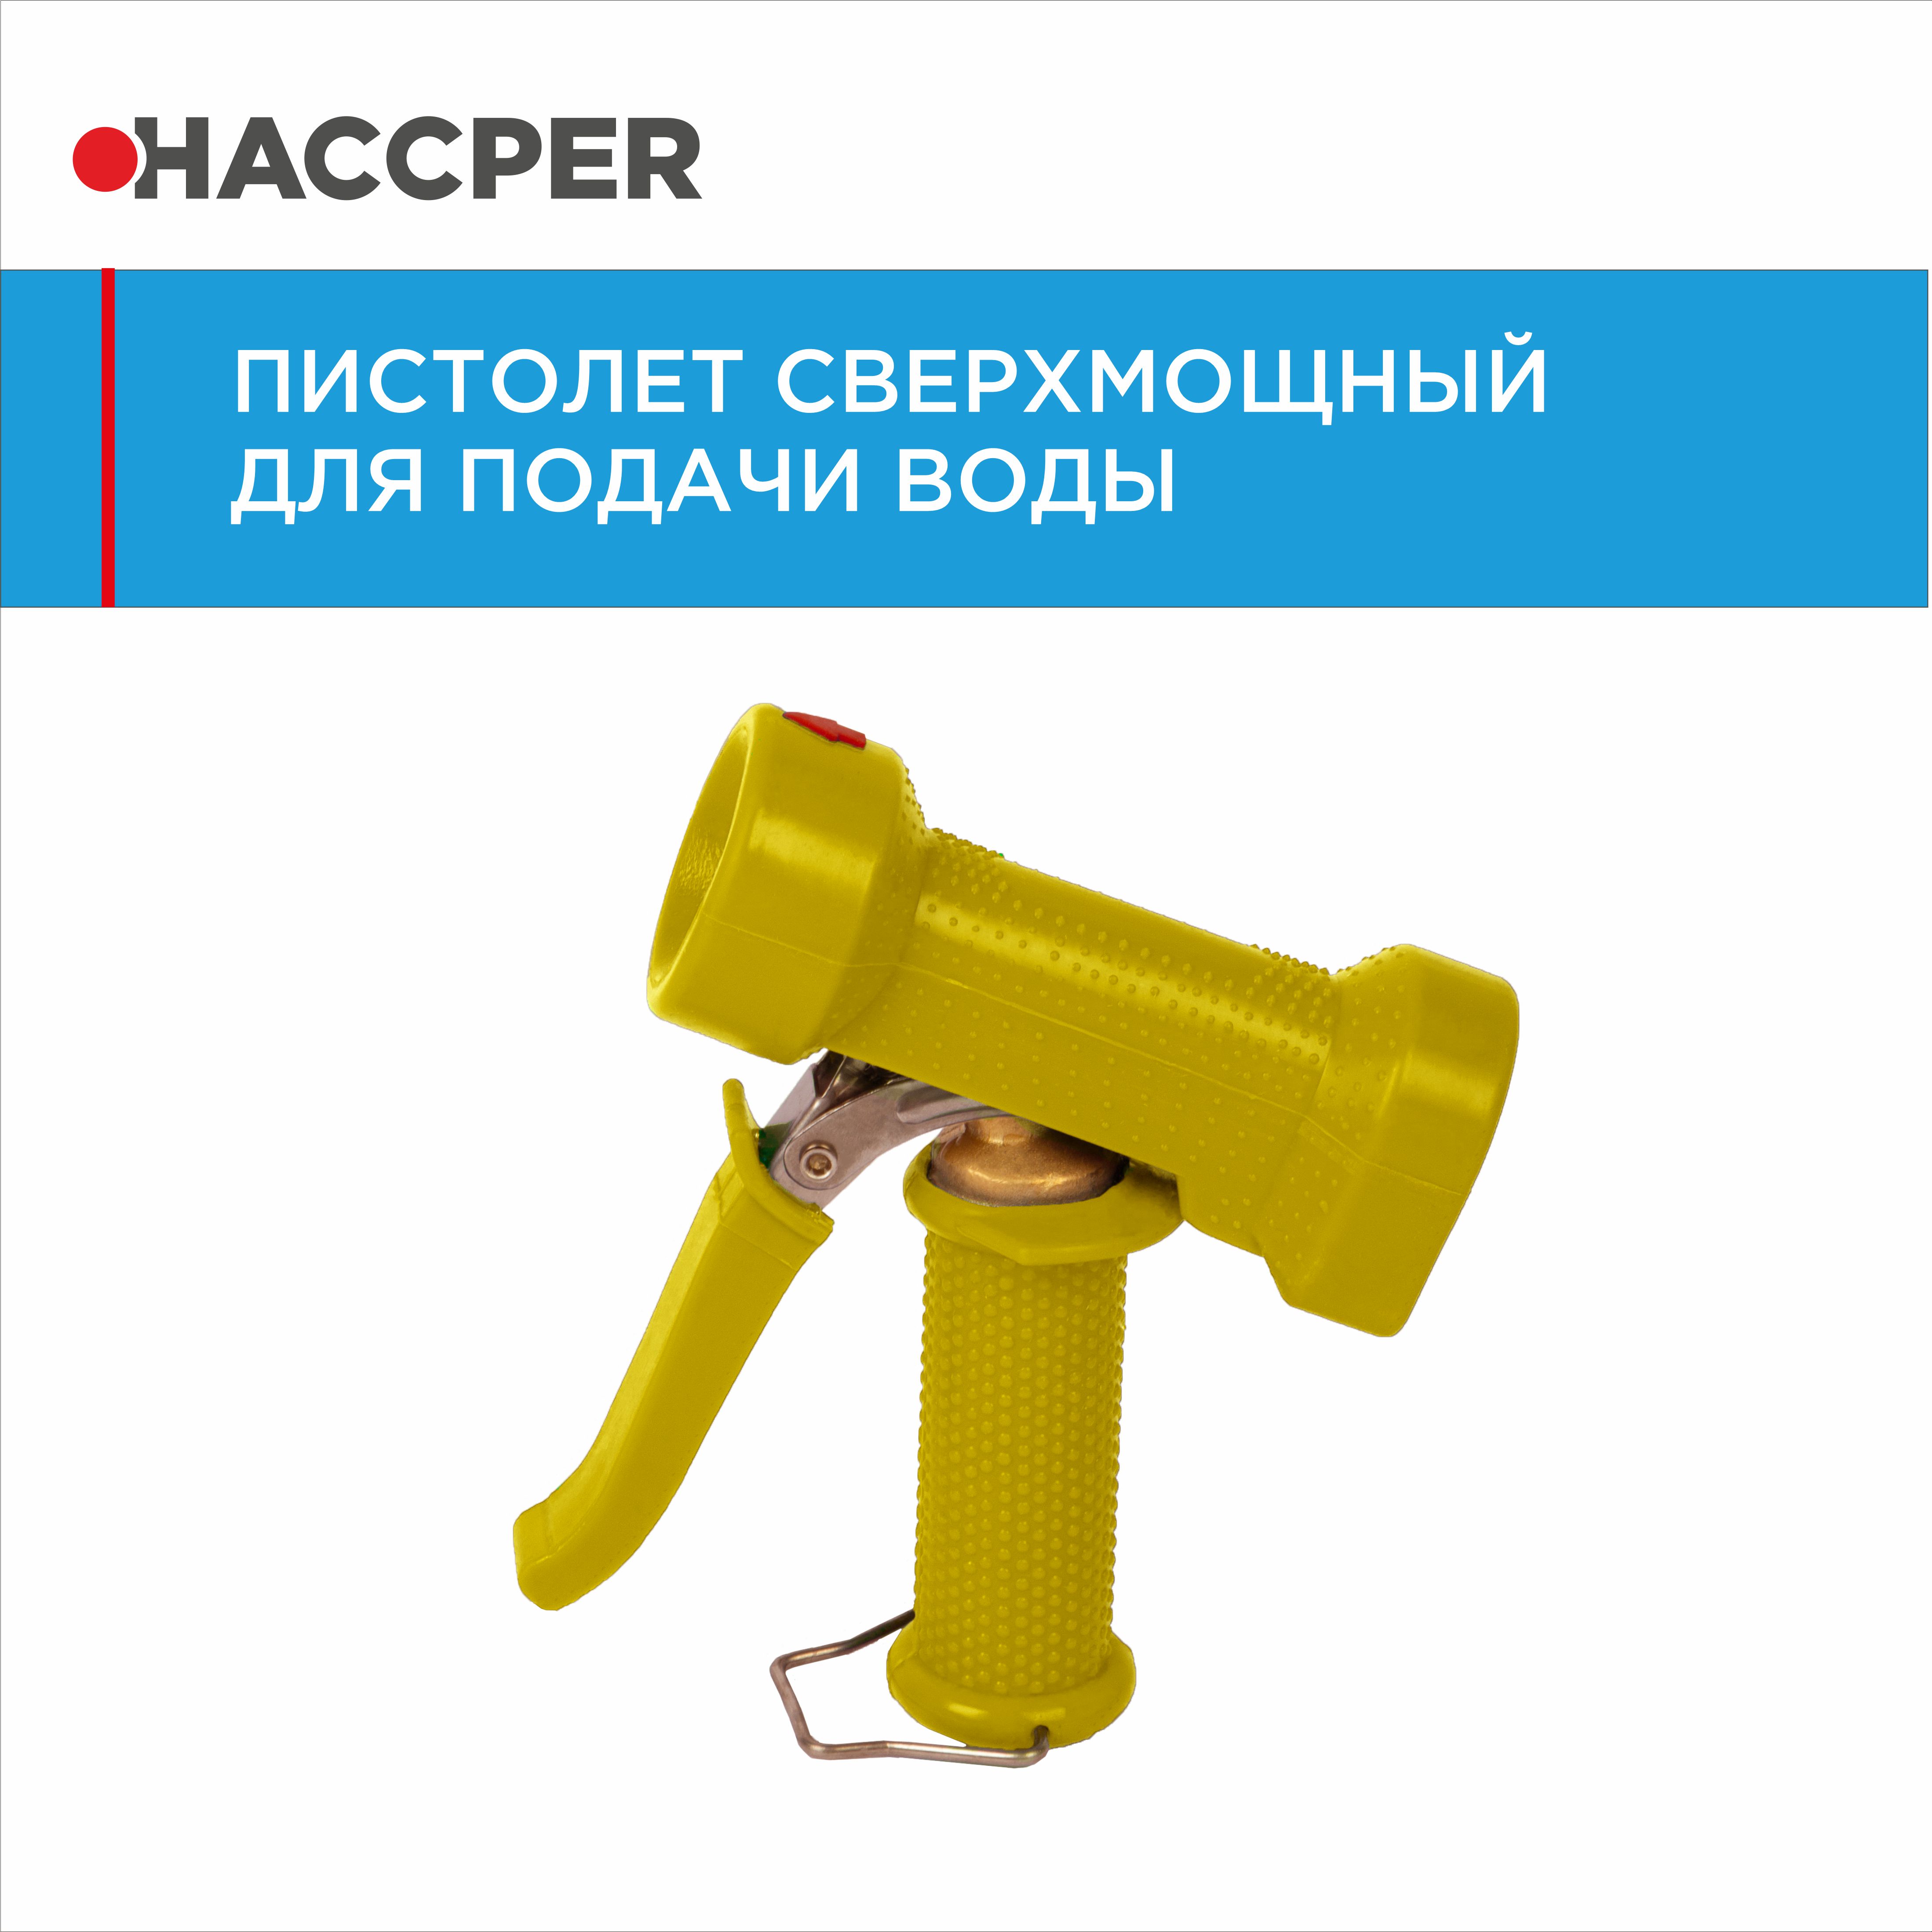 Пистолет HACCPER для подачи воды, желтый